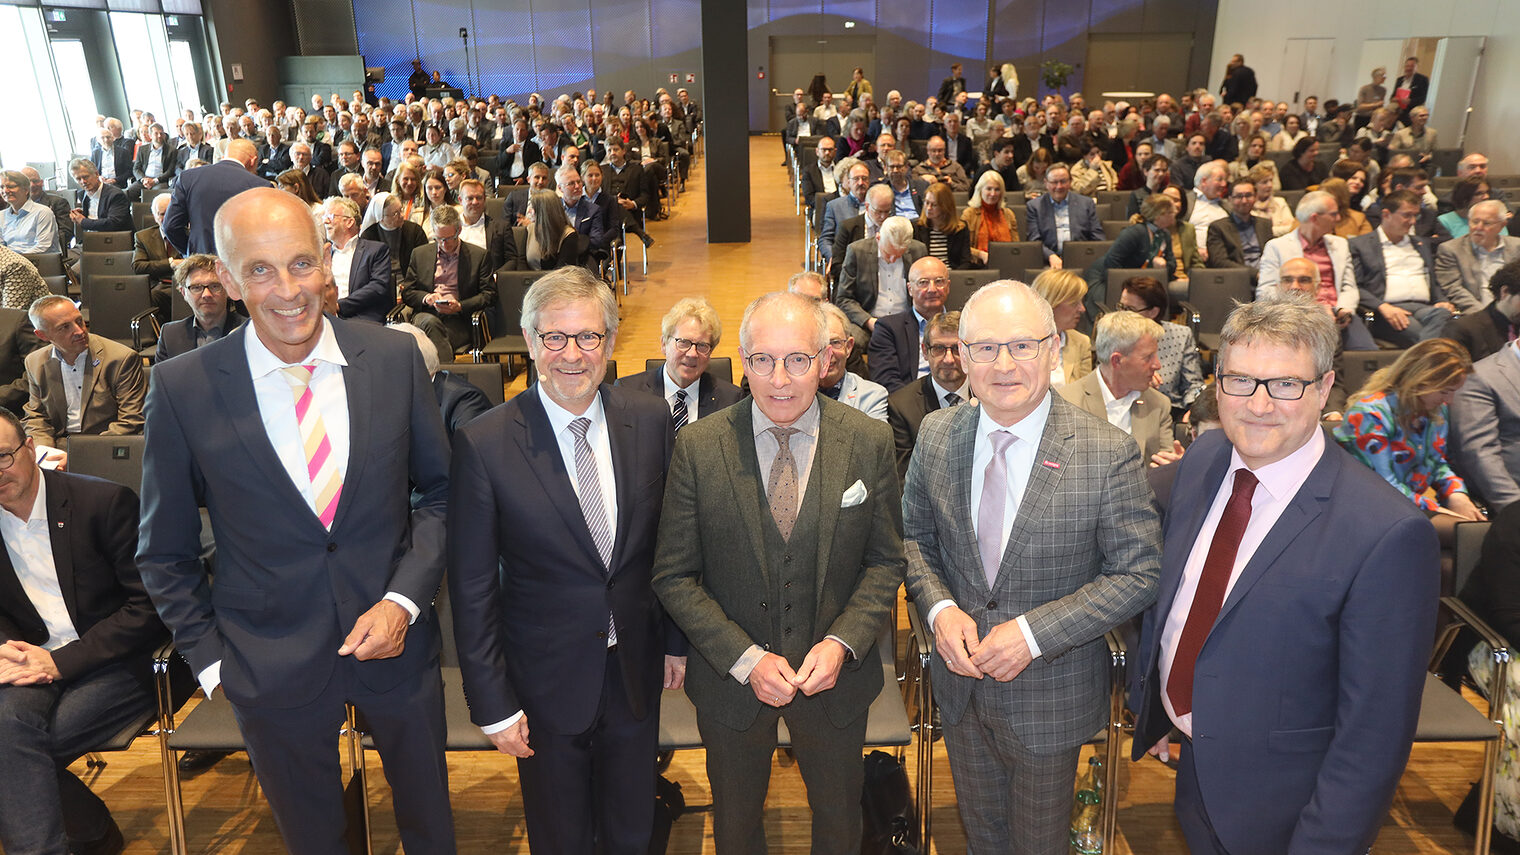 Gruppenbild vom Frühjahrsempfang der Wirtschaftskammern mit Claudius Marx, Thomas Conrady, Werner Rottler, Georg Hiltner und Gastredner Karl-Rudolf Korte.